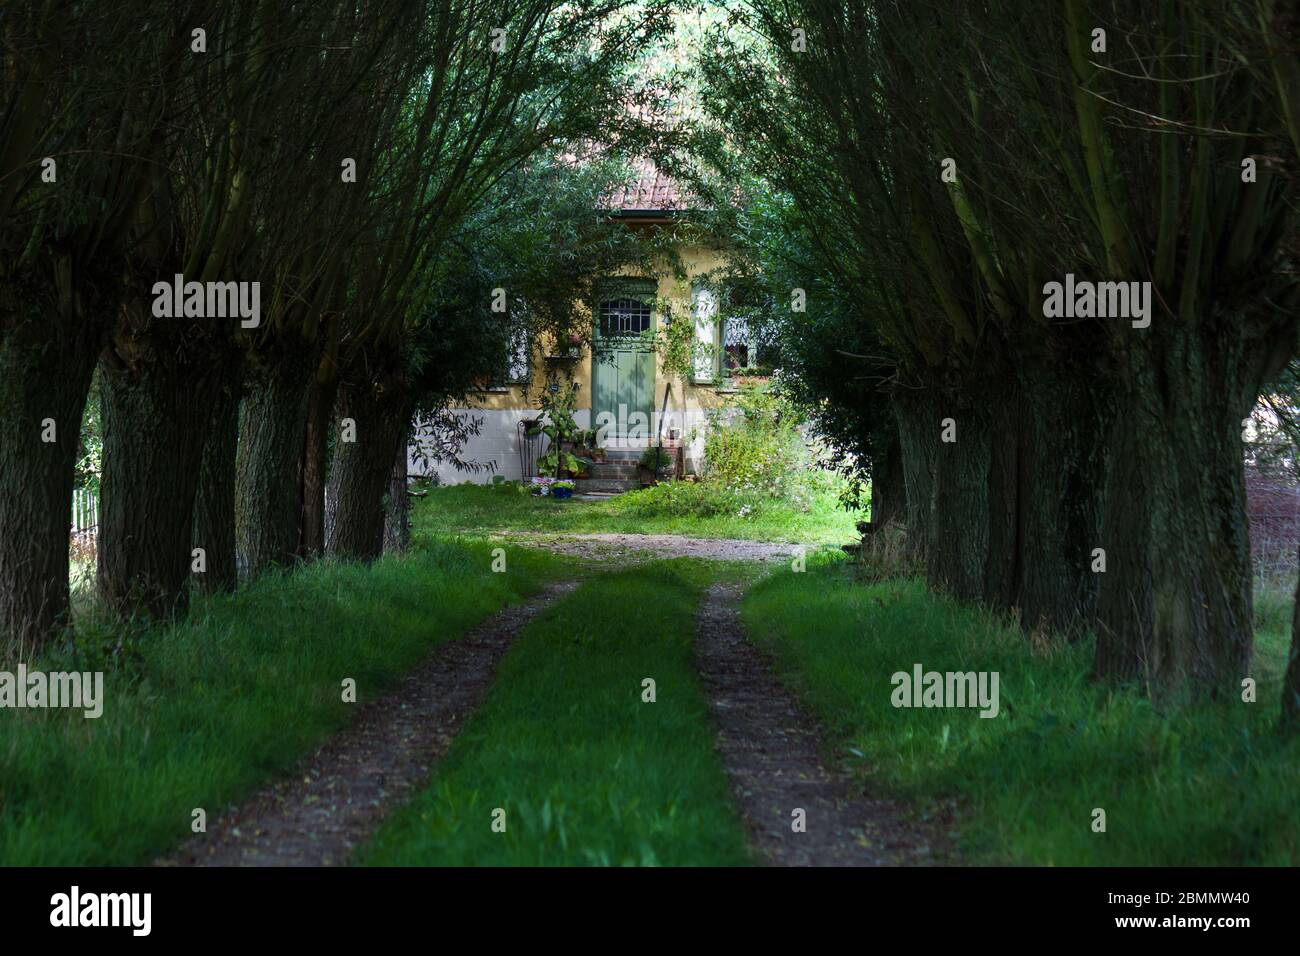 Sentier charmant avec saules de Pollard menant à une maison traditionnelle de campagne en Flandre, Belgique Banque D'Images